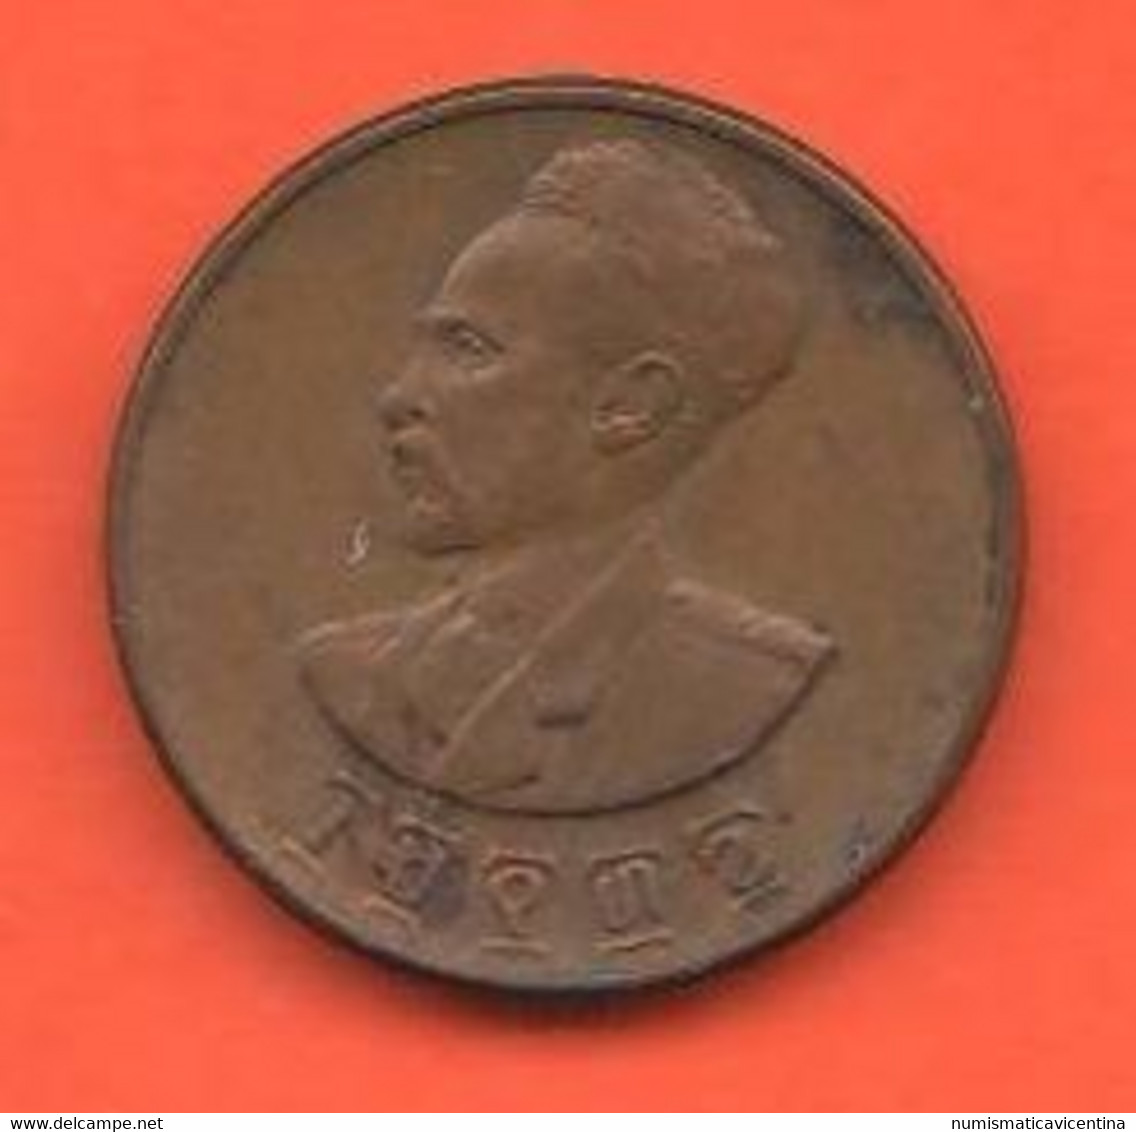 Etiopia 1 Cent 1936 Haile SellasieI° Emperor Of Ethiopia Copper Coin - Ethiopia